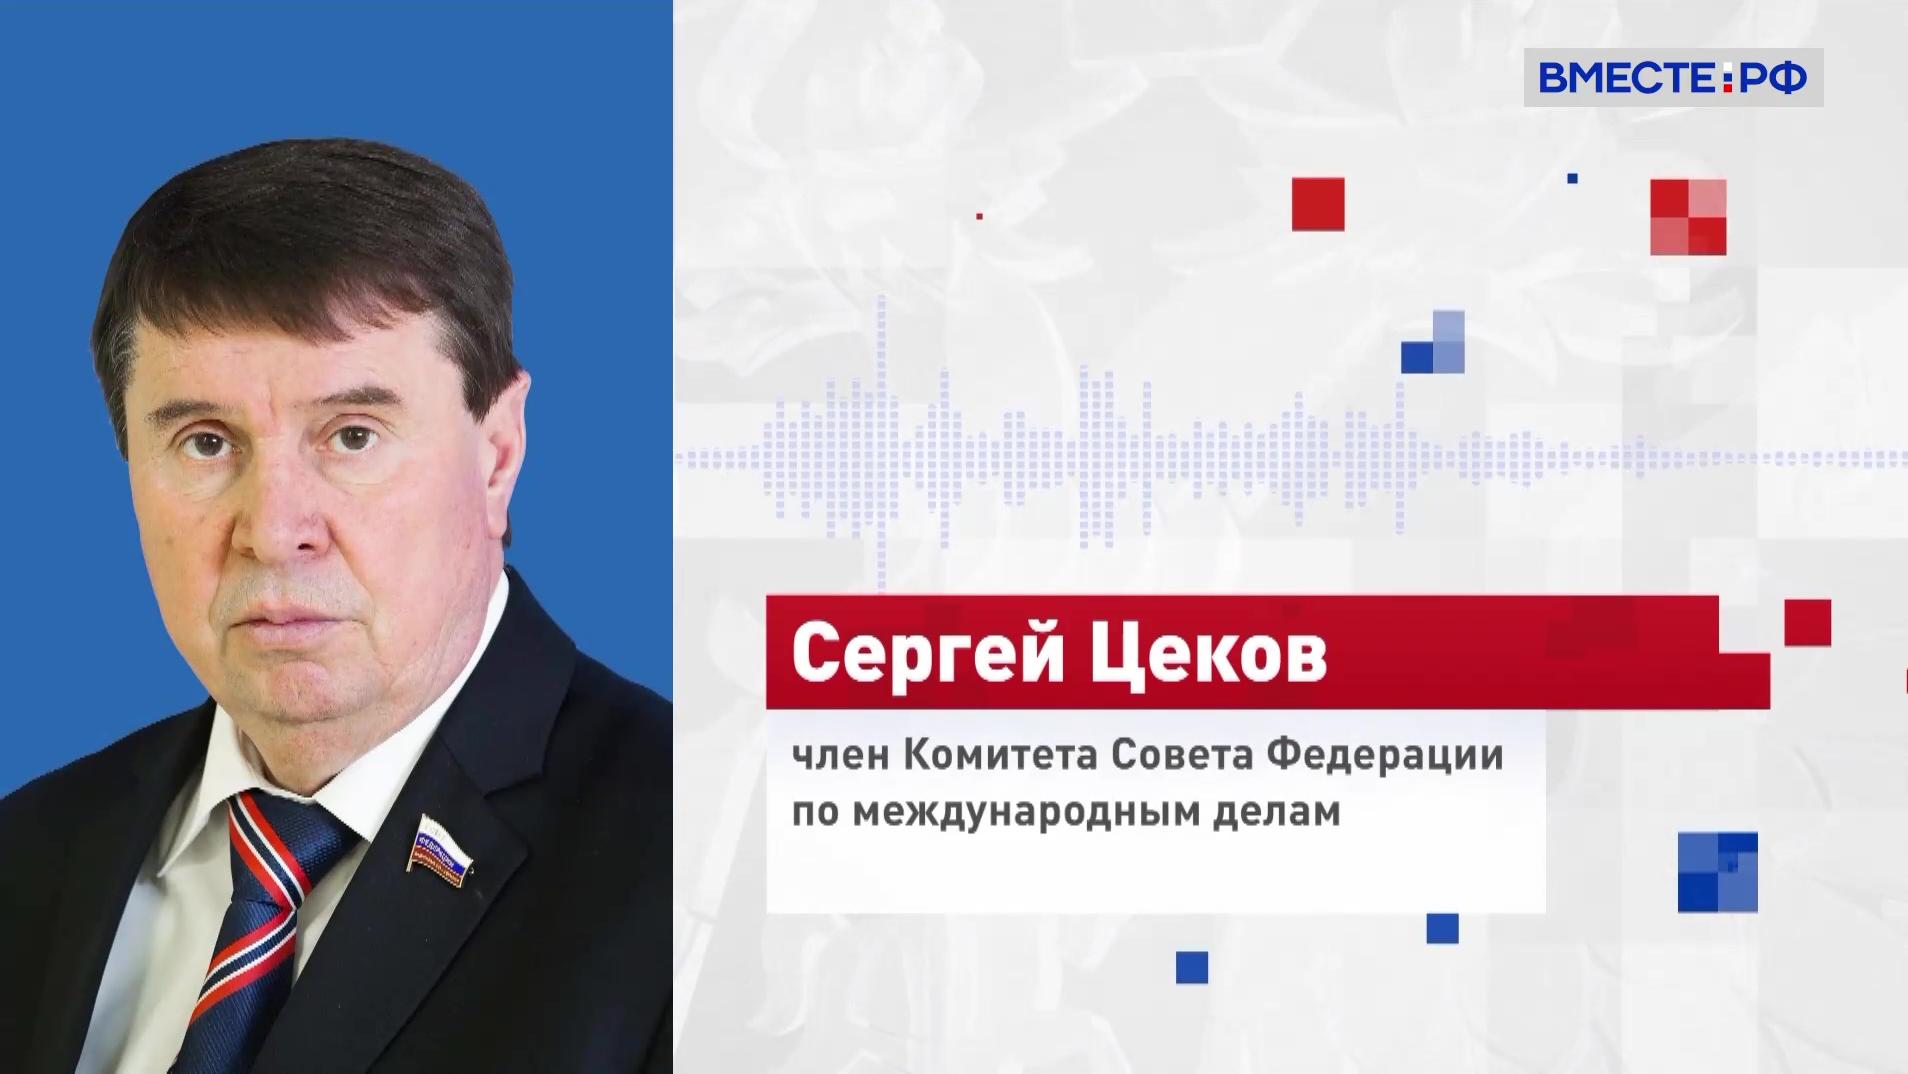 Сенатор Цеков: РФ может оказать экономическое воздействие на Латвию и Эстонию